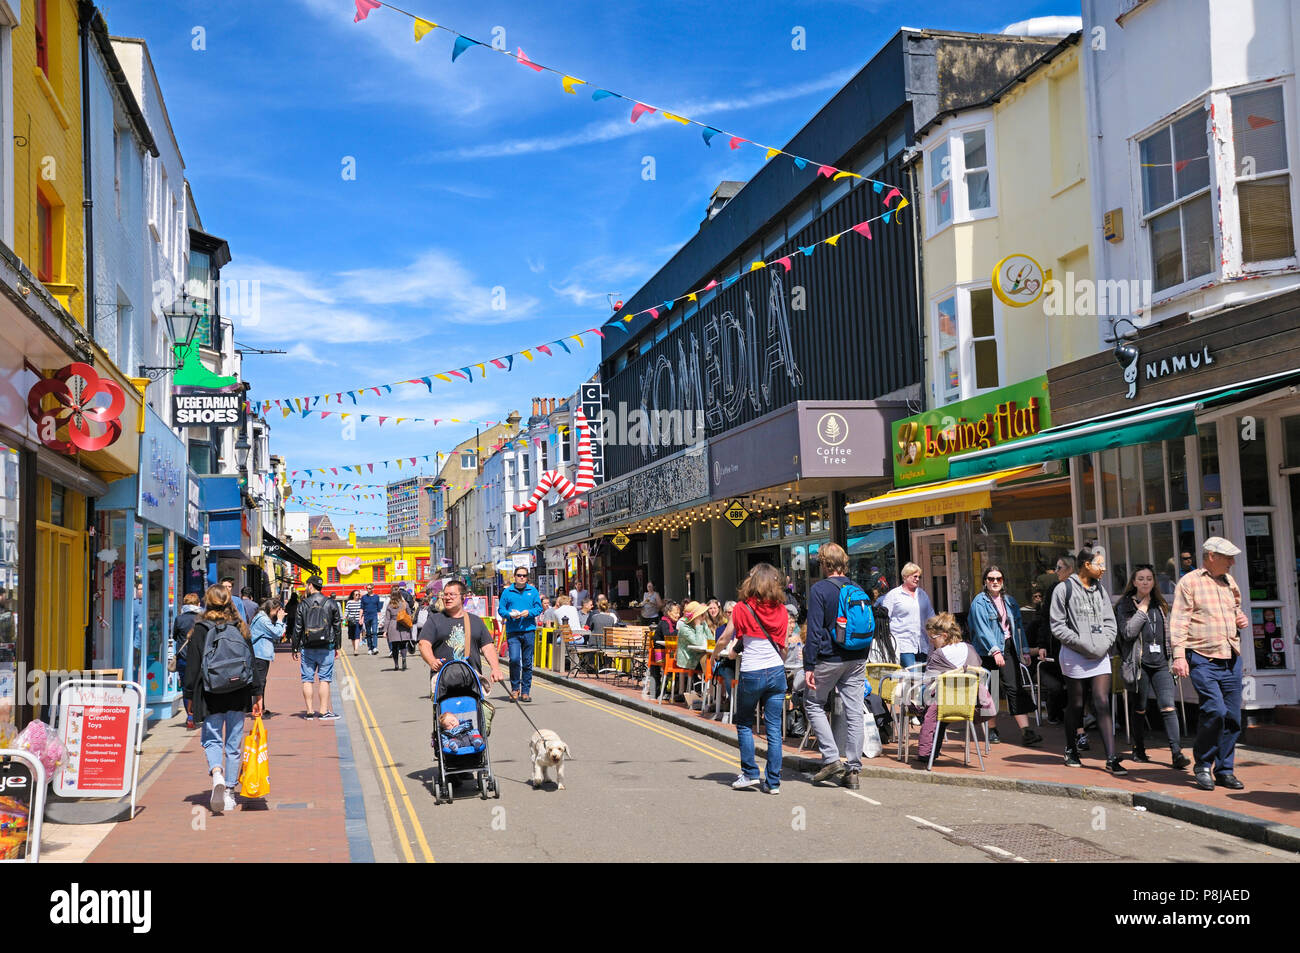 North Laine, Brighton, East Sussex, Regno Unito. Negozi, ristoranti e Komedia - uno dei luoghi di divertimento più popolari di Brighton - in Gardner Street. Foto Stock